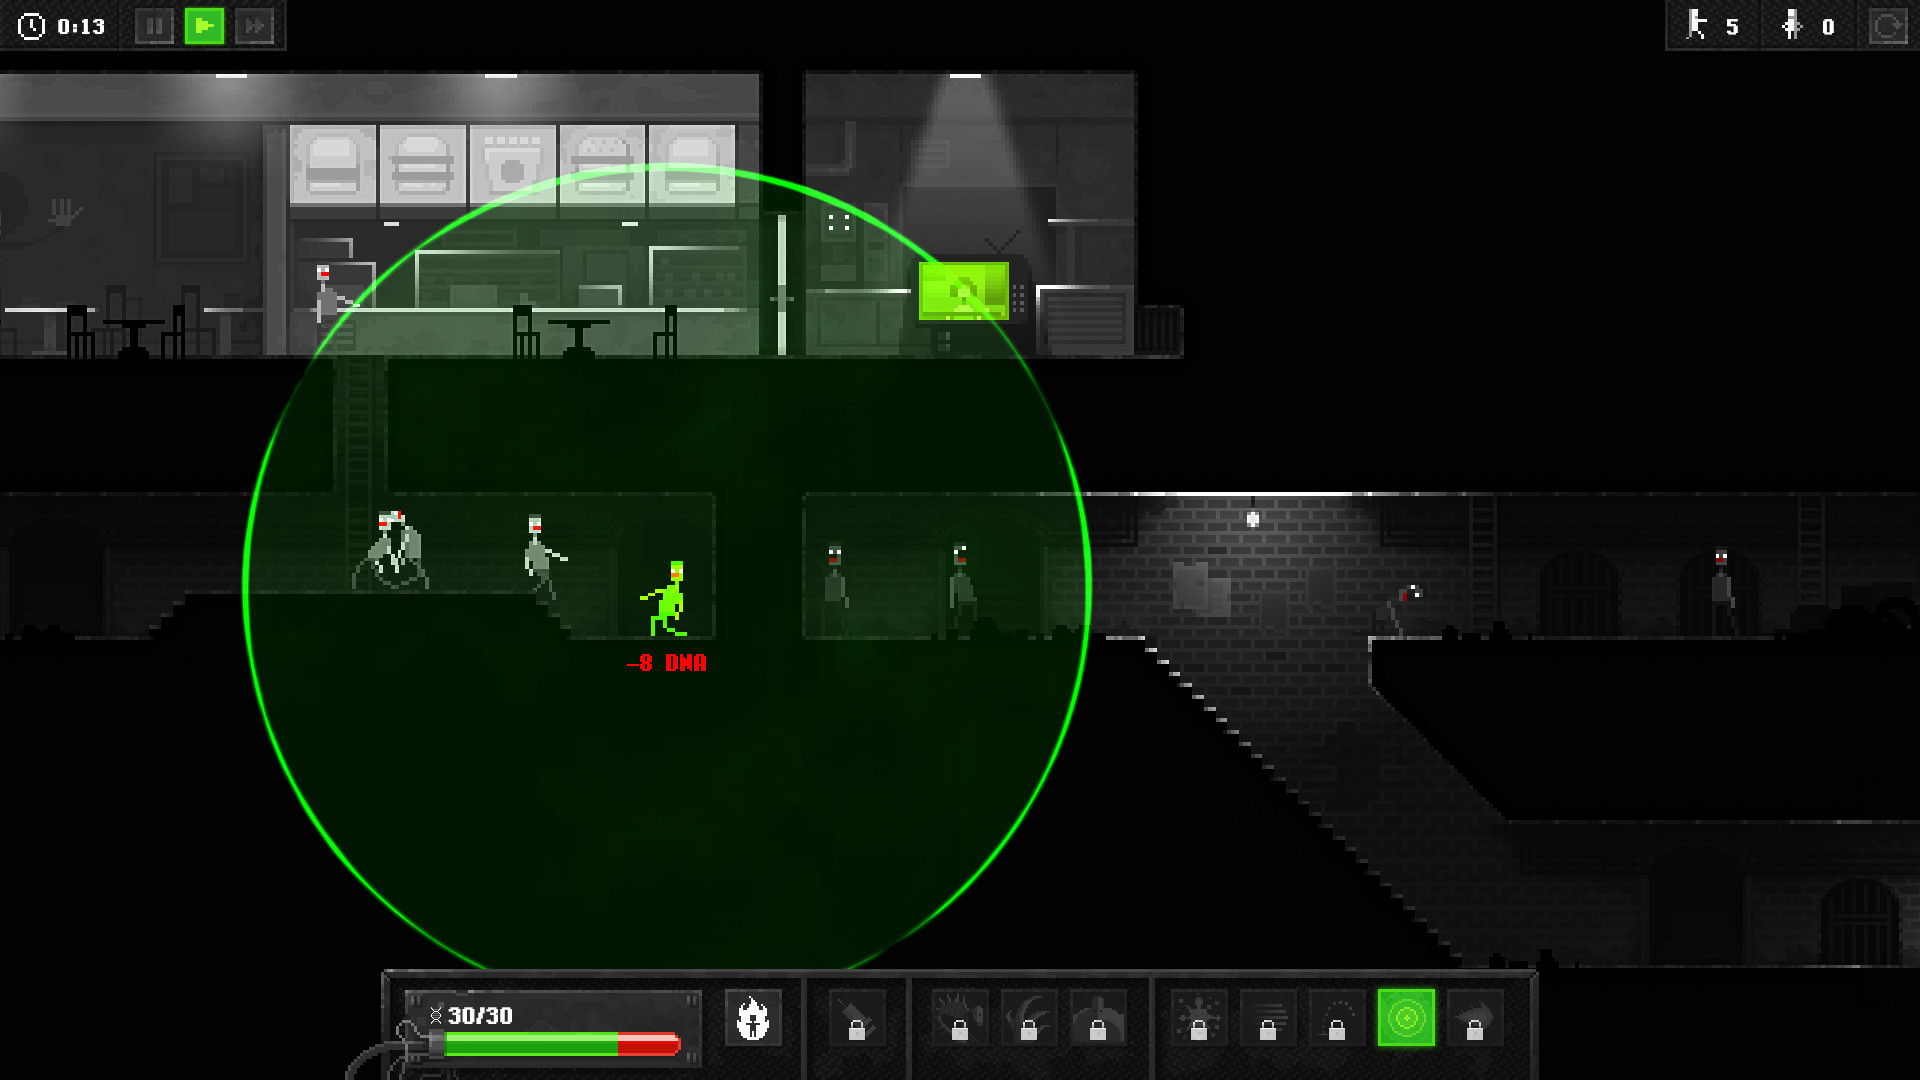 Zombie Night Terror screenshot